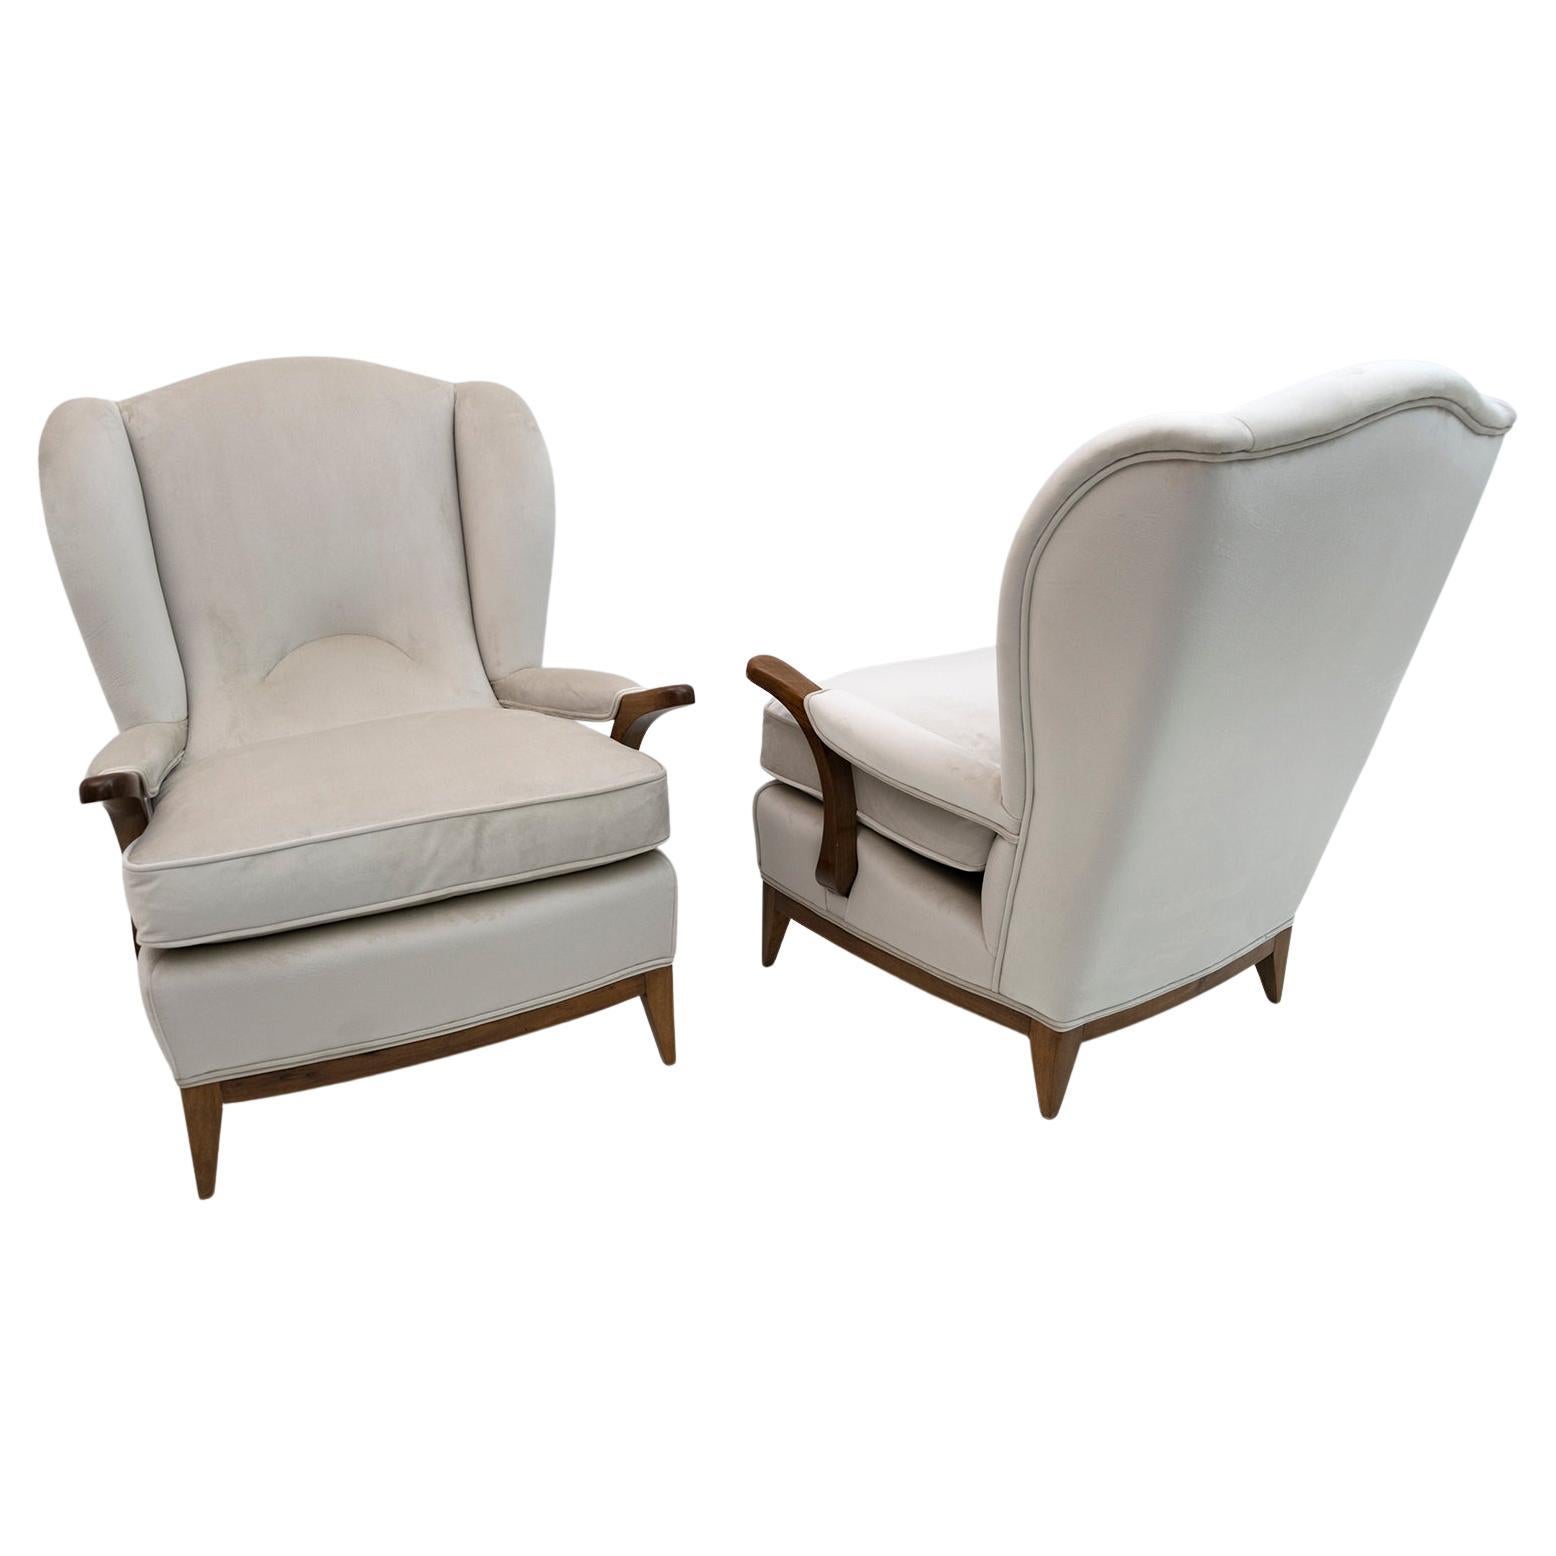 Seltenes Paar Ohrensessel, entworfen von Paolo Buffa und hergestellt in den 1950er Jahren.
Die Sessel wurden restauriert und mit elfenbeinfarbenem Samt gepolstert.

Paolo Buffa war ein italienischer Designer und Architekt. Er ist einer der